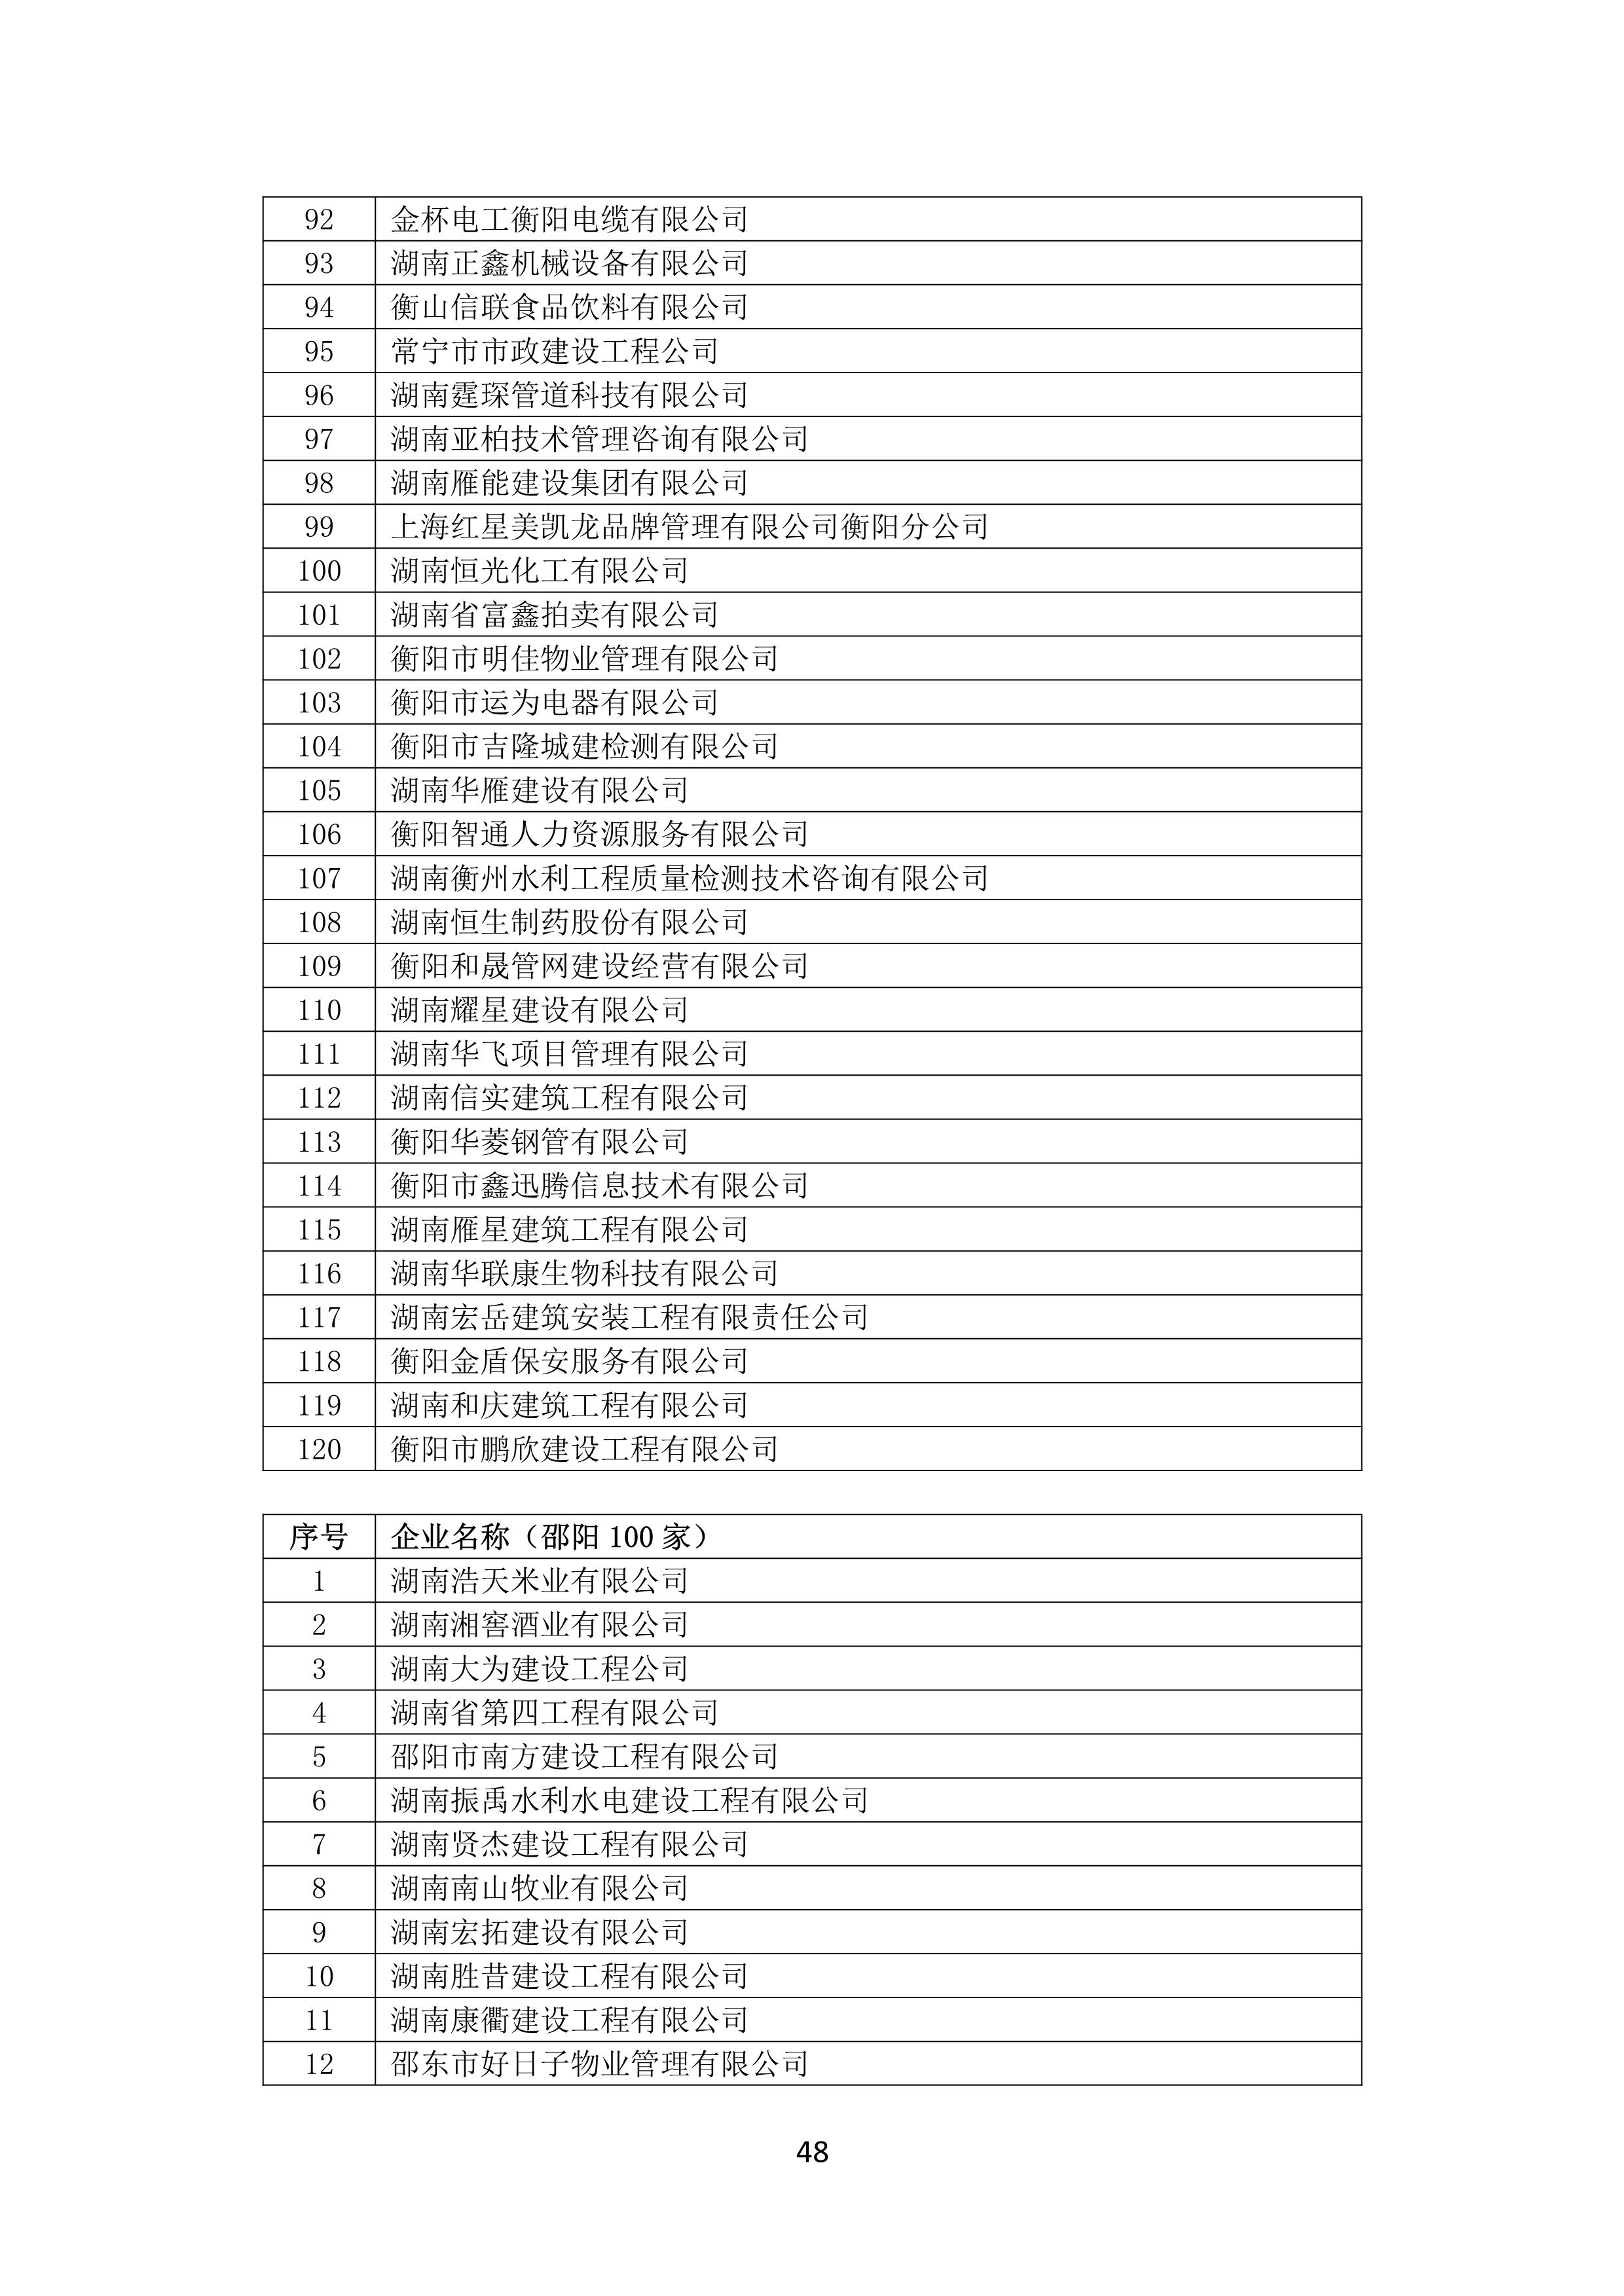 2021 年(nián)度湖南省守合同重信用企業名單_49.png